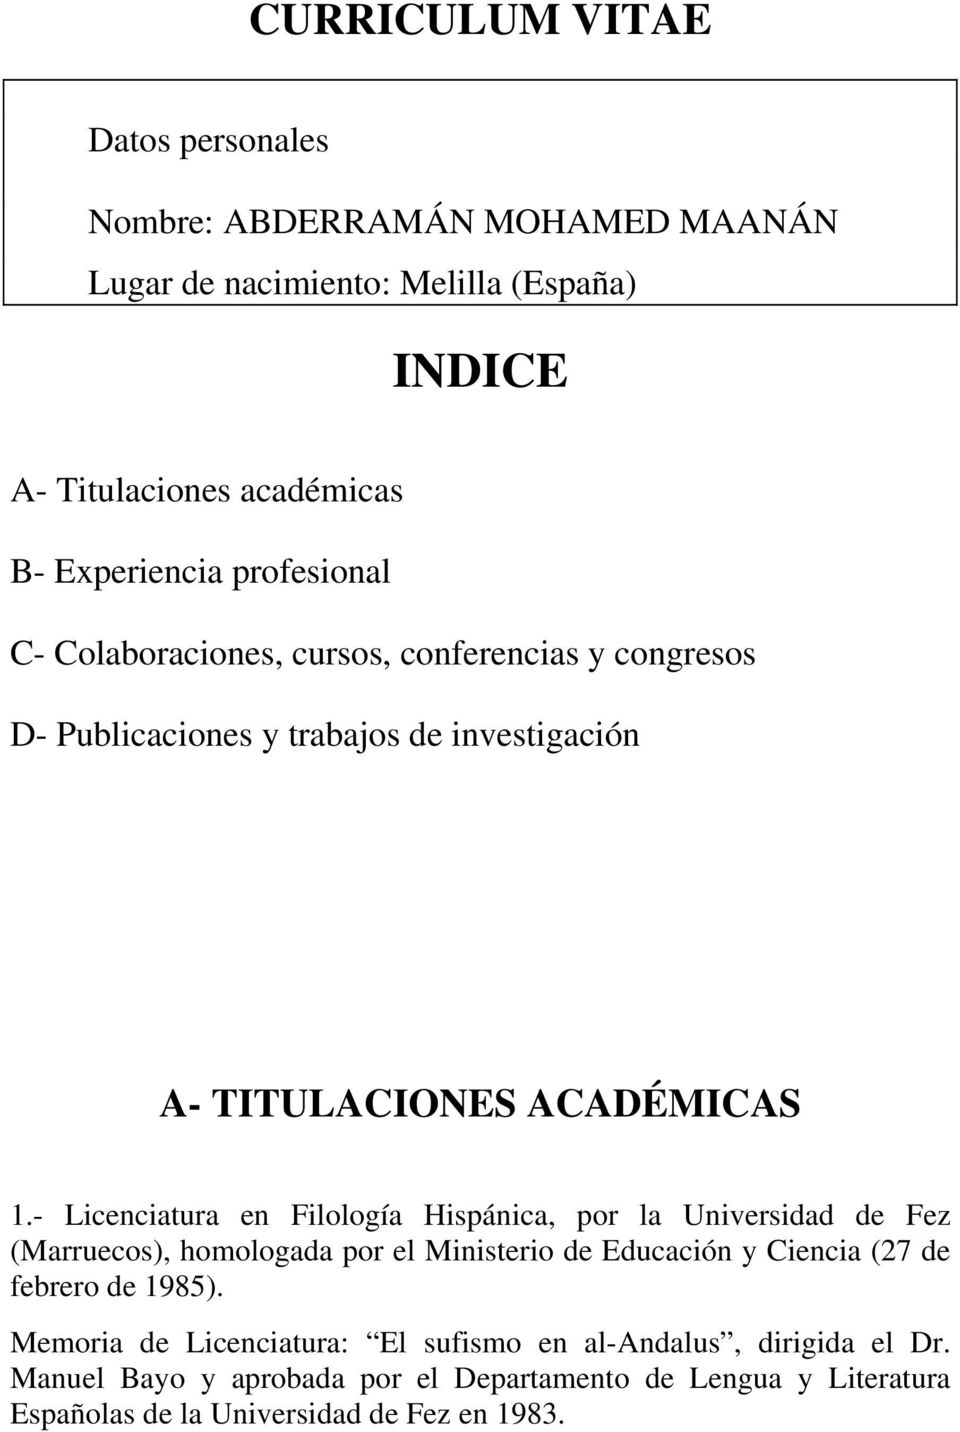 - Licenciatura en Filología Hispánica, por la Universidad de Fez (Marruecos), homologada por el Ministerio de Educación y Ciencia (27 de febrero de 1985).